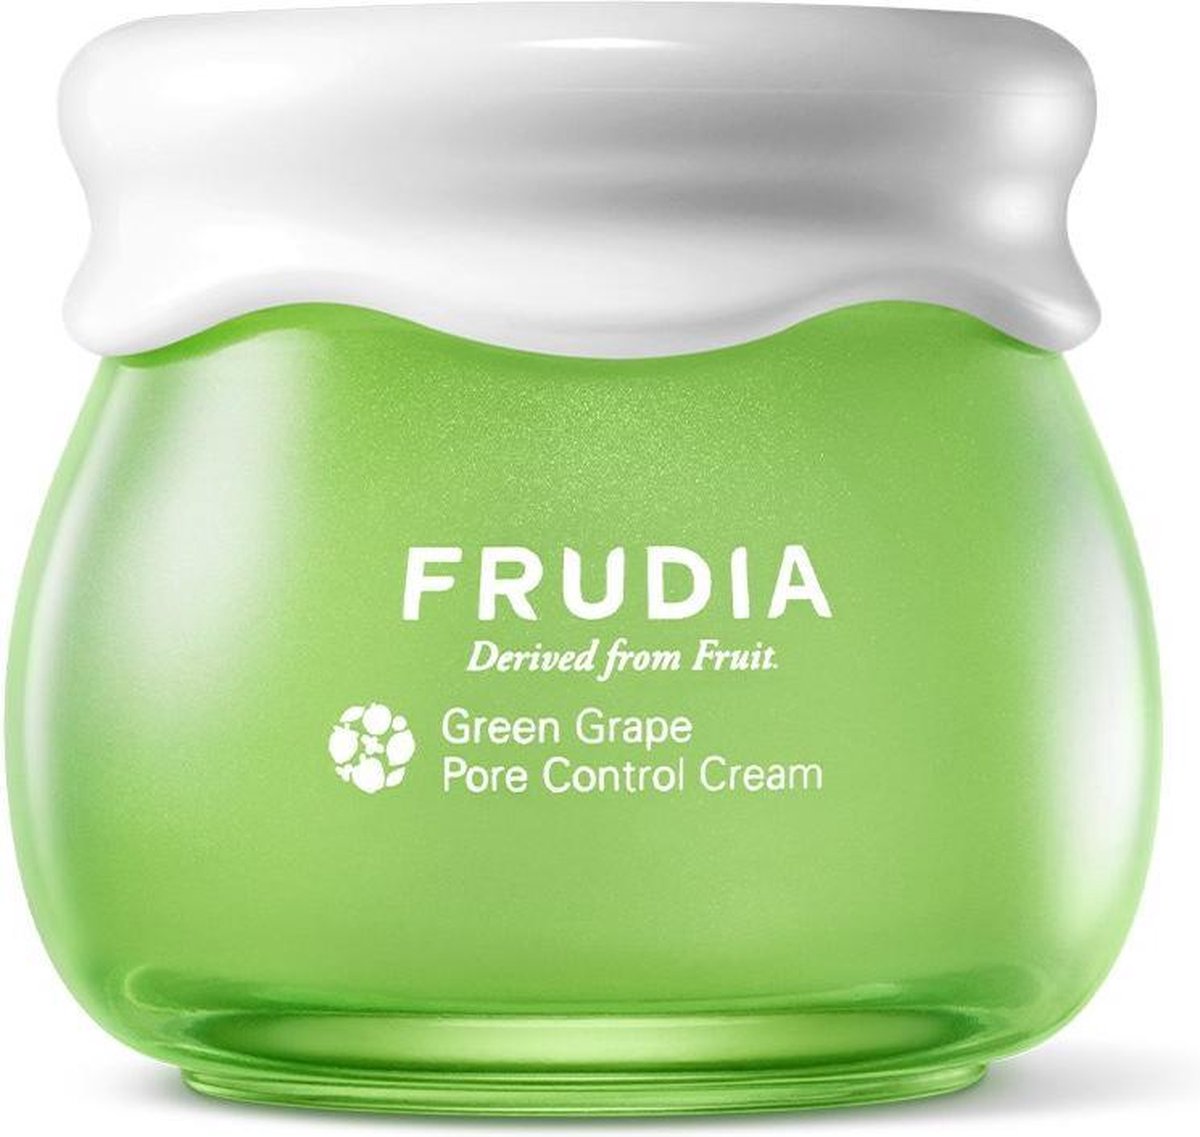 Frudia - Pore Control Cream krem do cery tłustej Green Grape 55g - Frudia